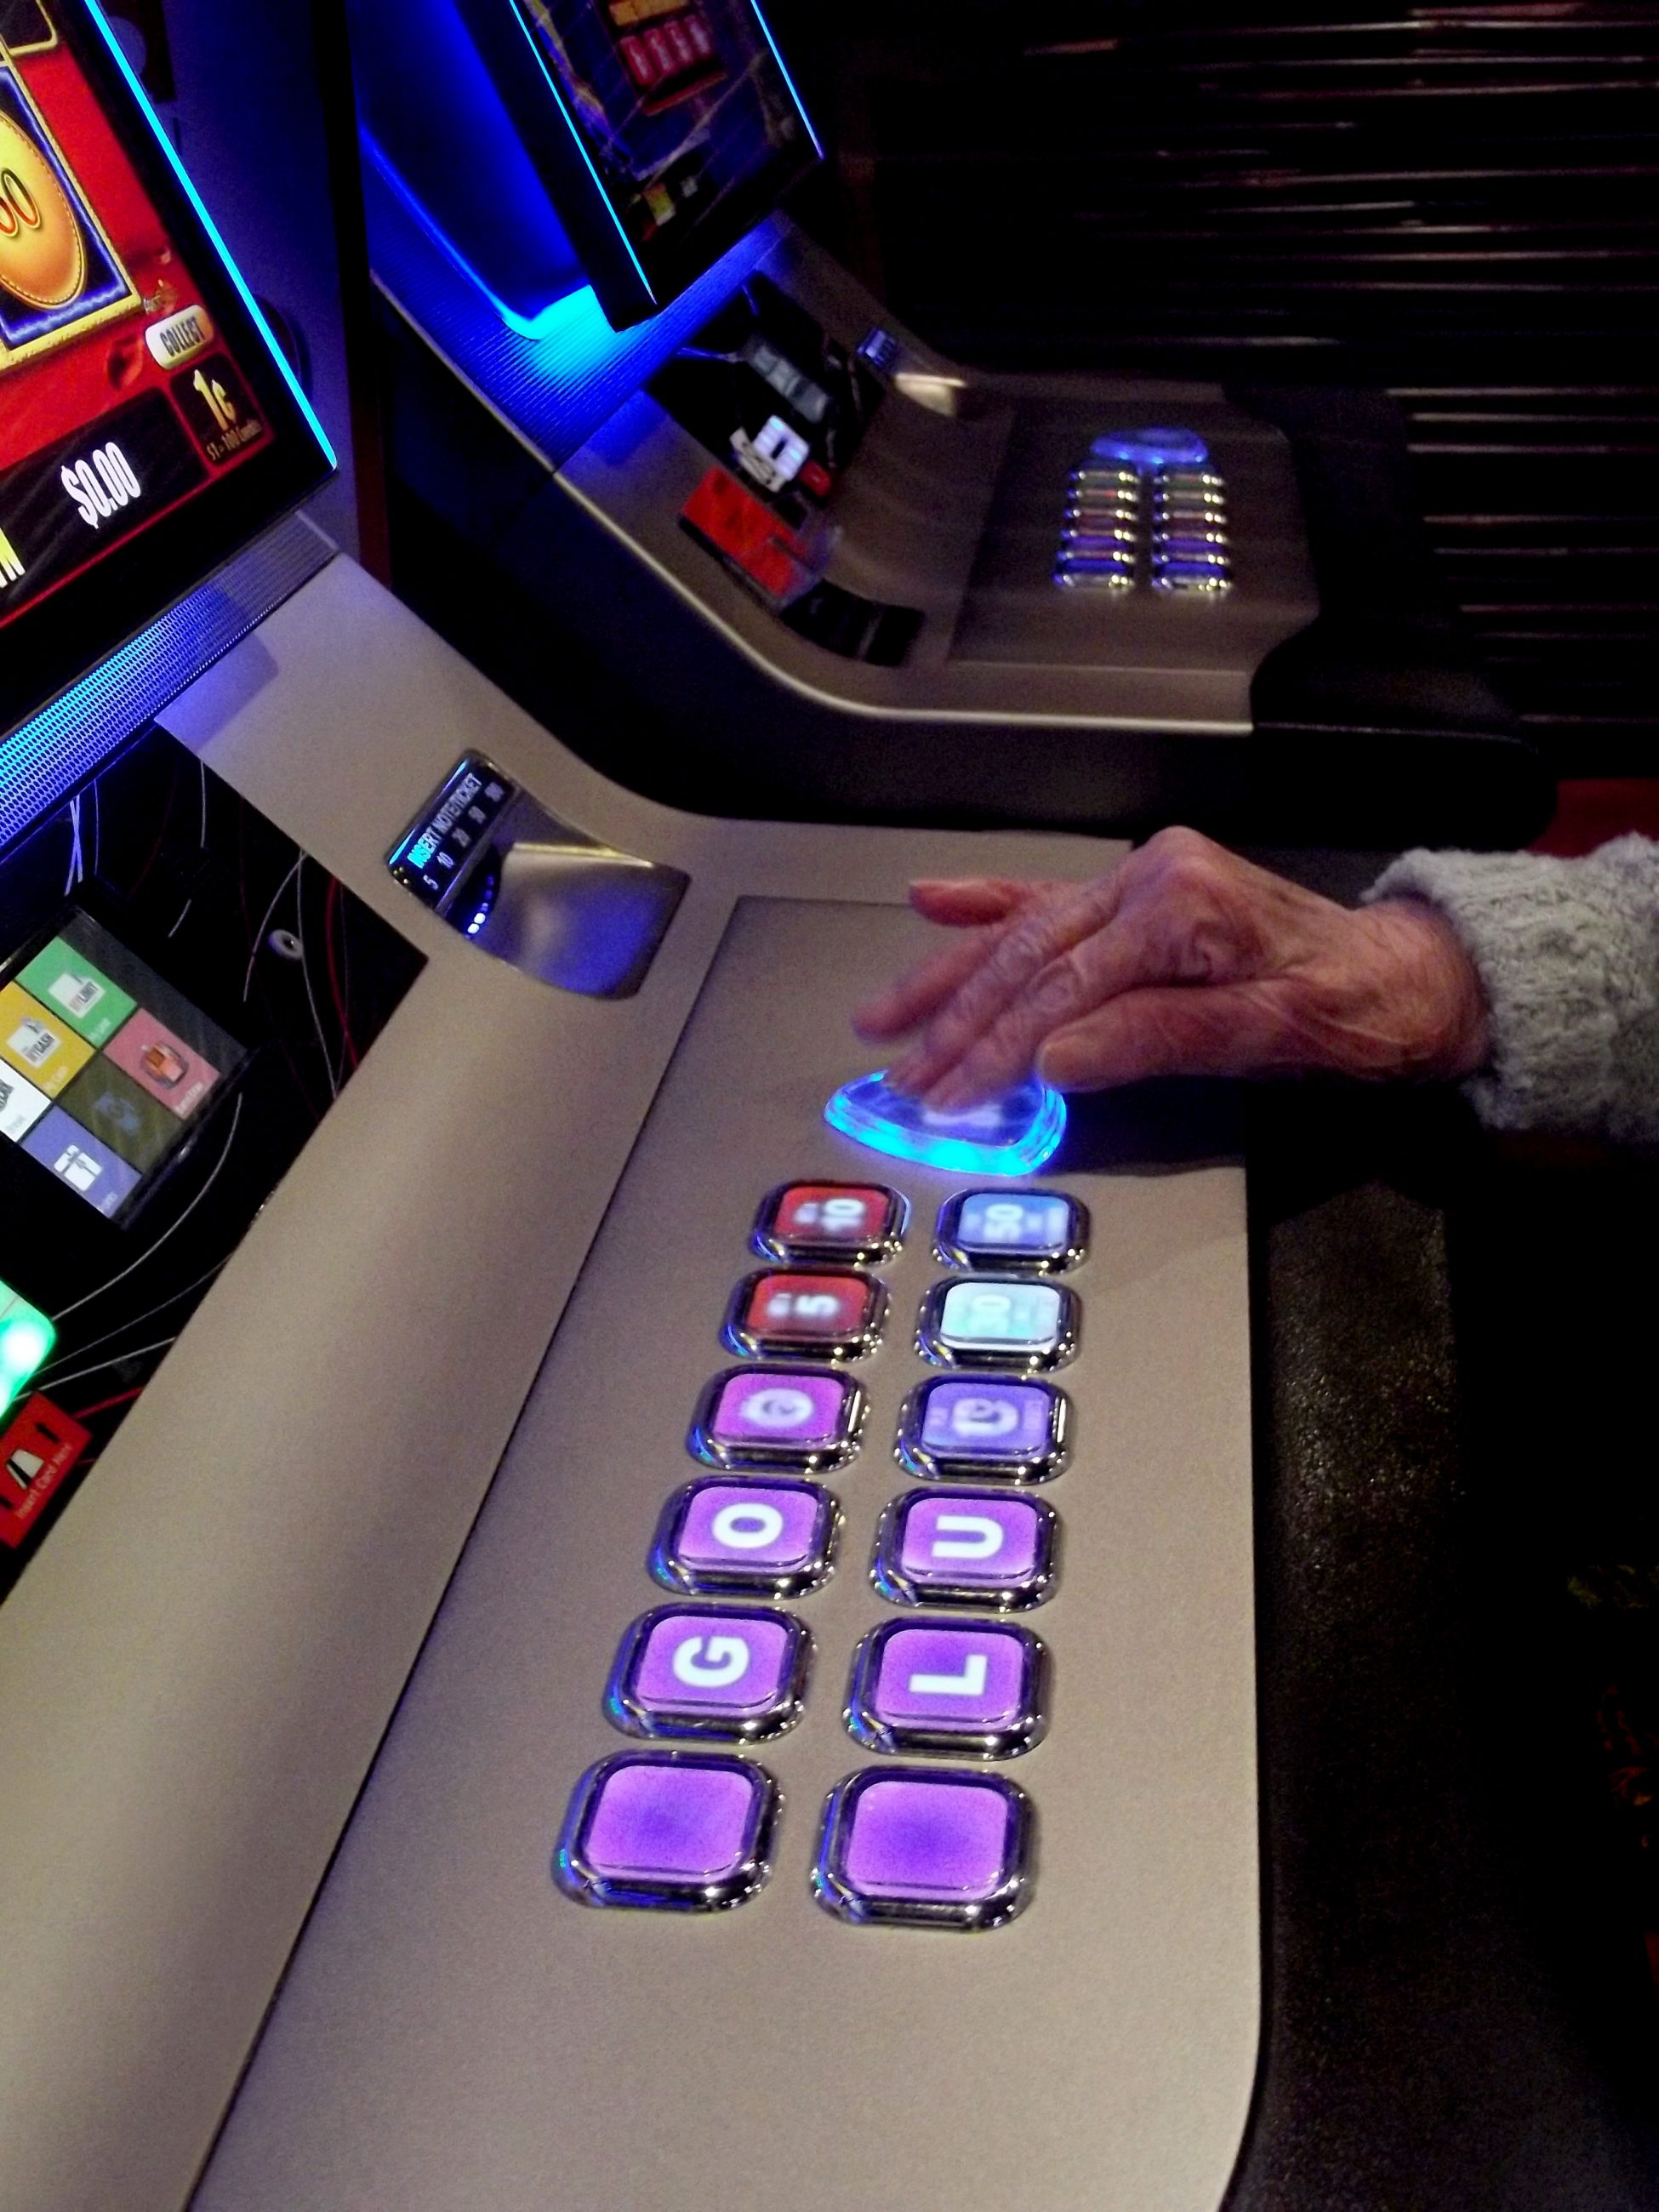 elderly lady playing a casino slot machine 2021 08 30 09 06 15 utc